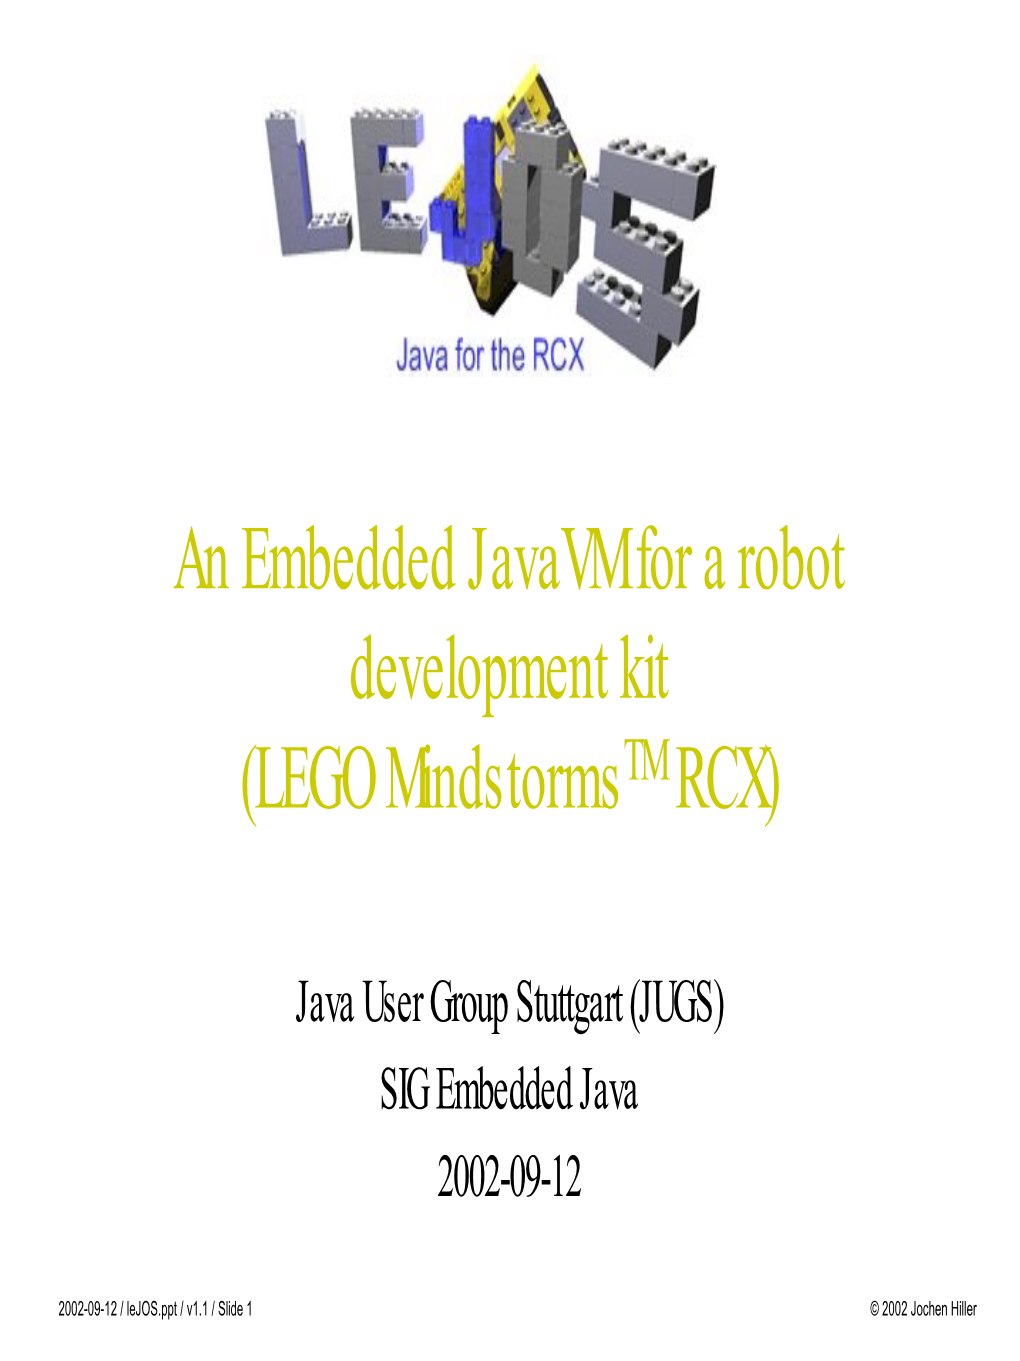 An Embedded Javavm for a Robot Development Kit (LEGO Mindstormstm RCX)